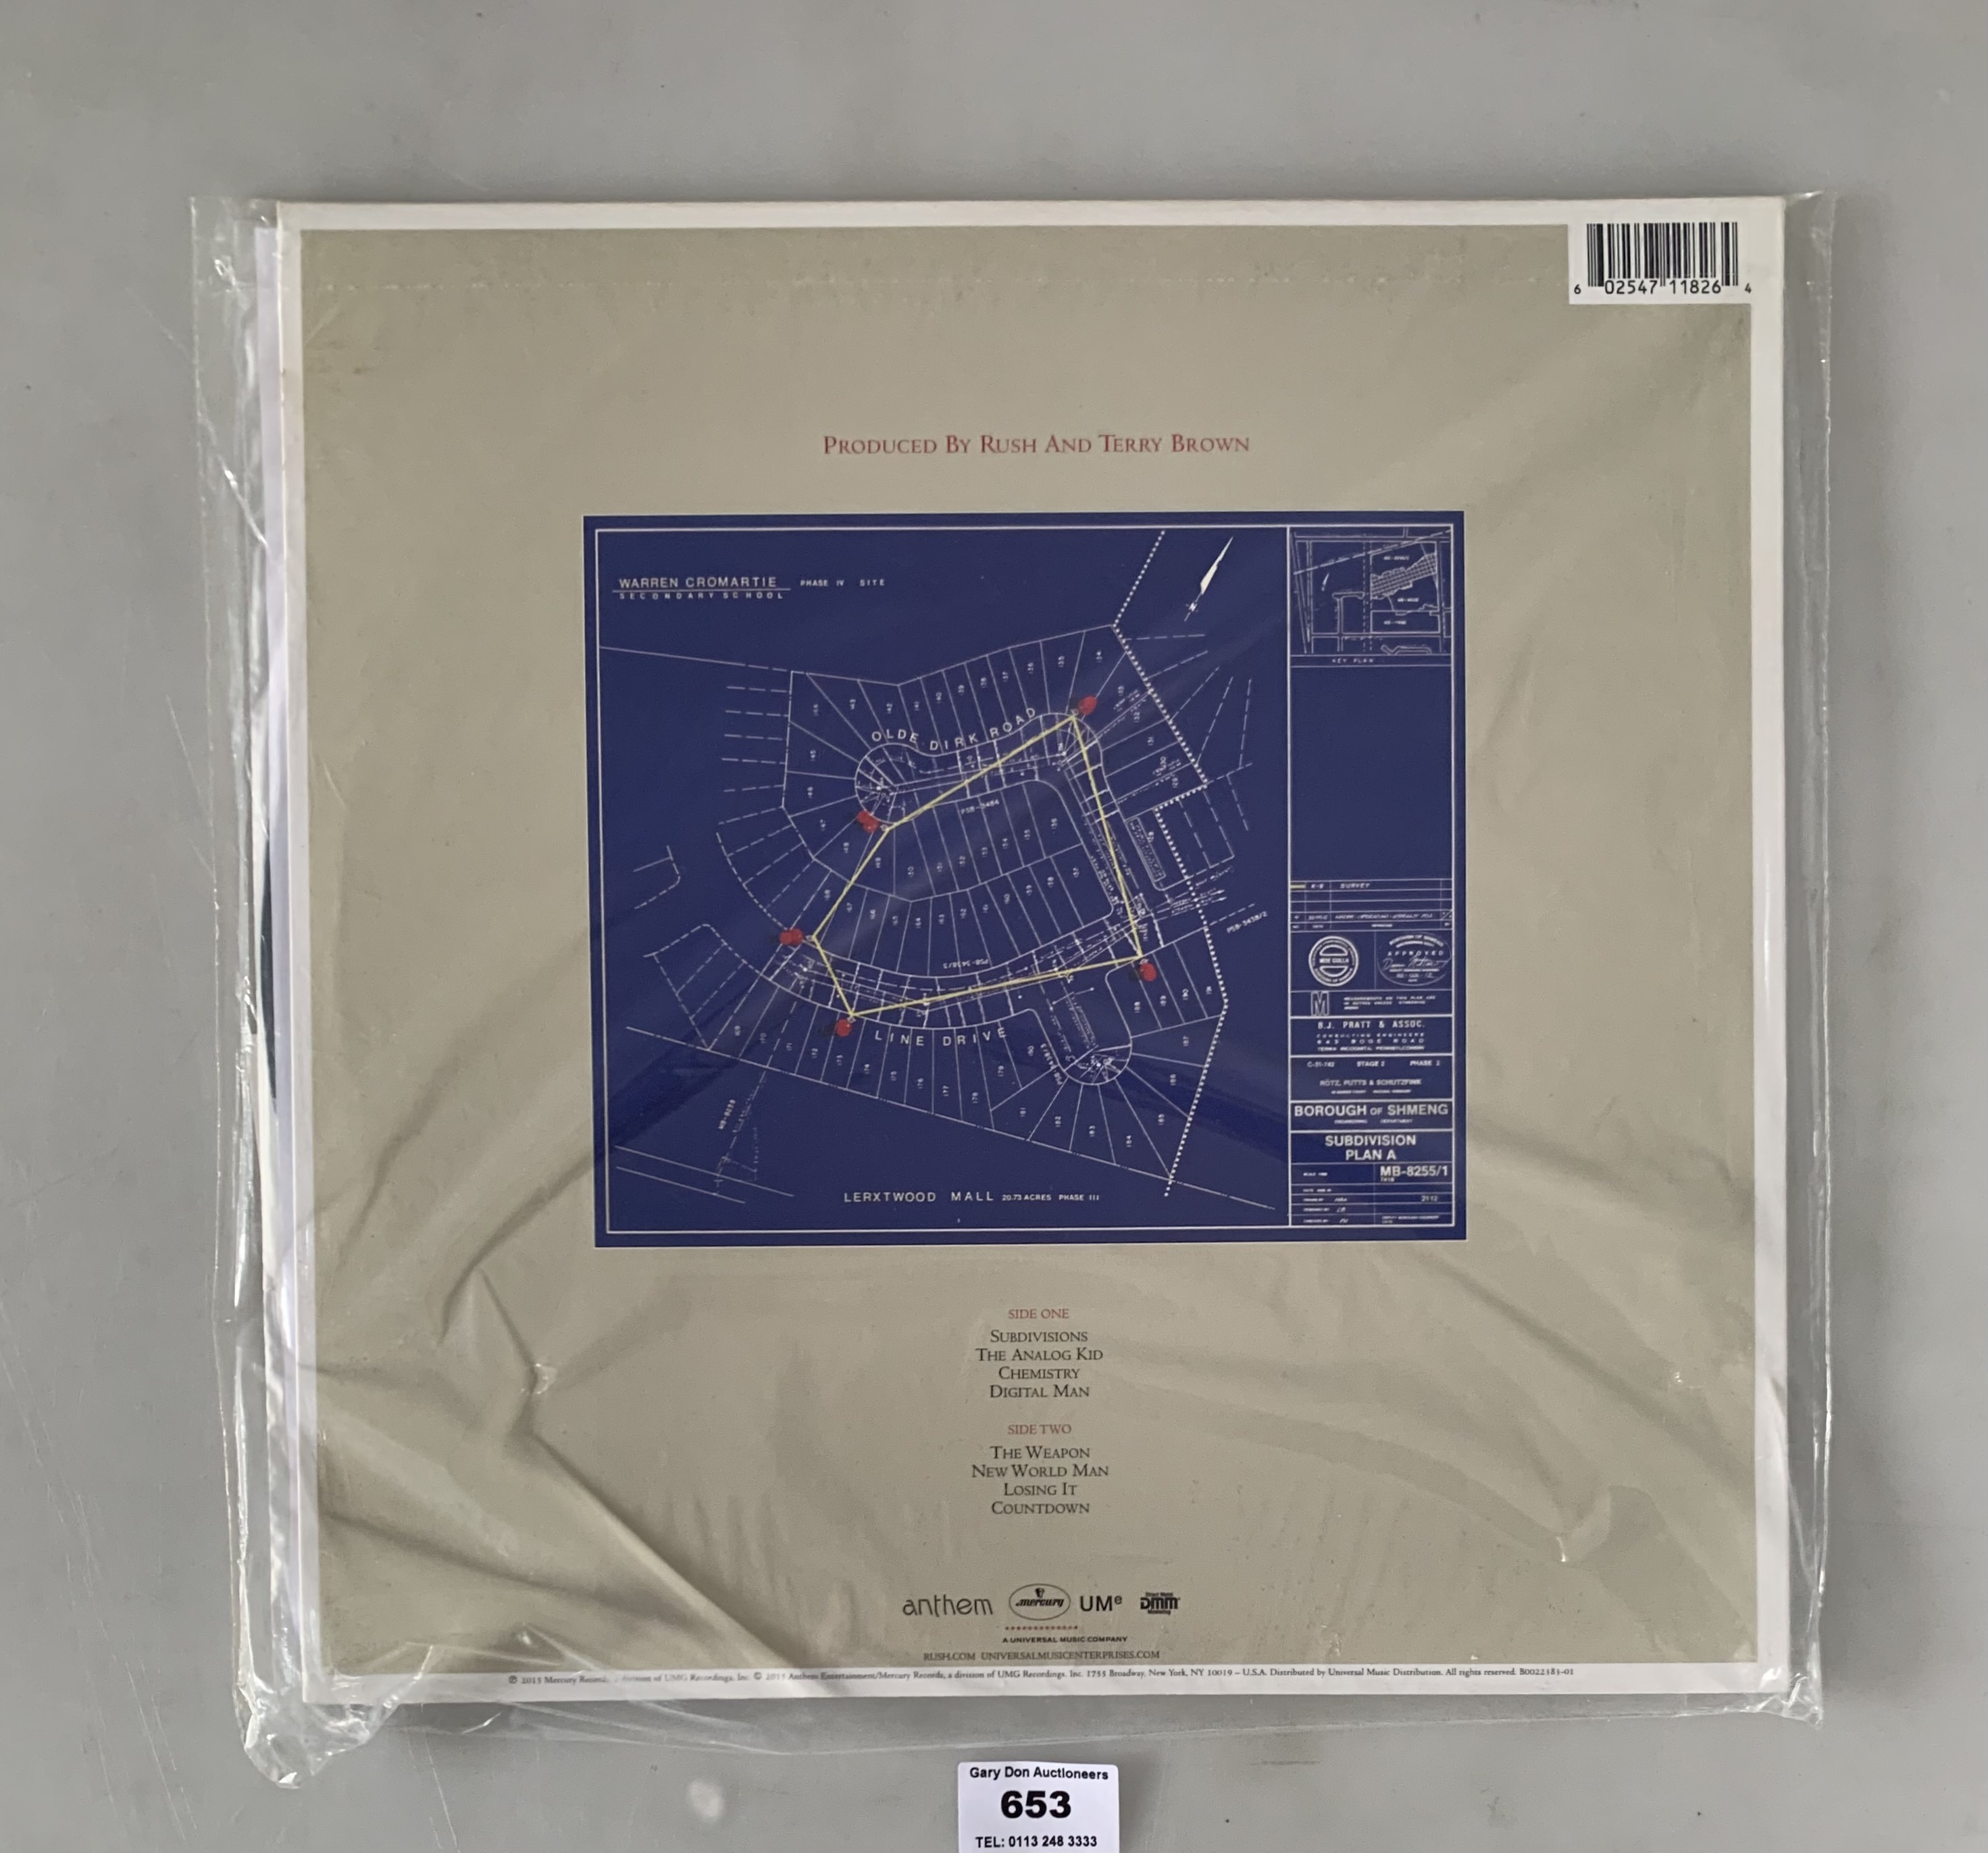 Rush- Signals LP, US Edition Reissue - Image 2 of 2